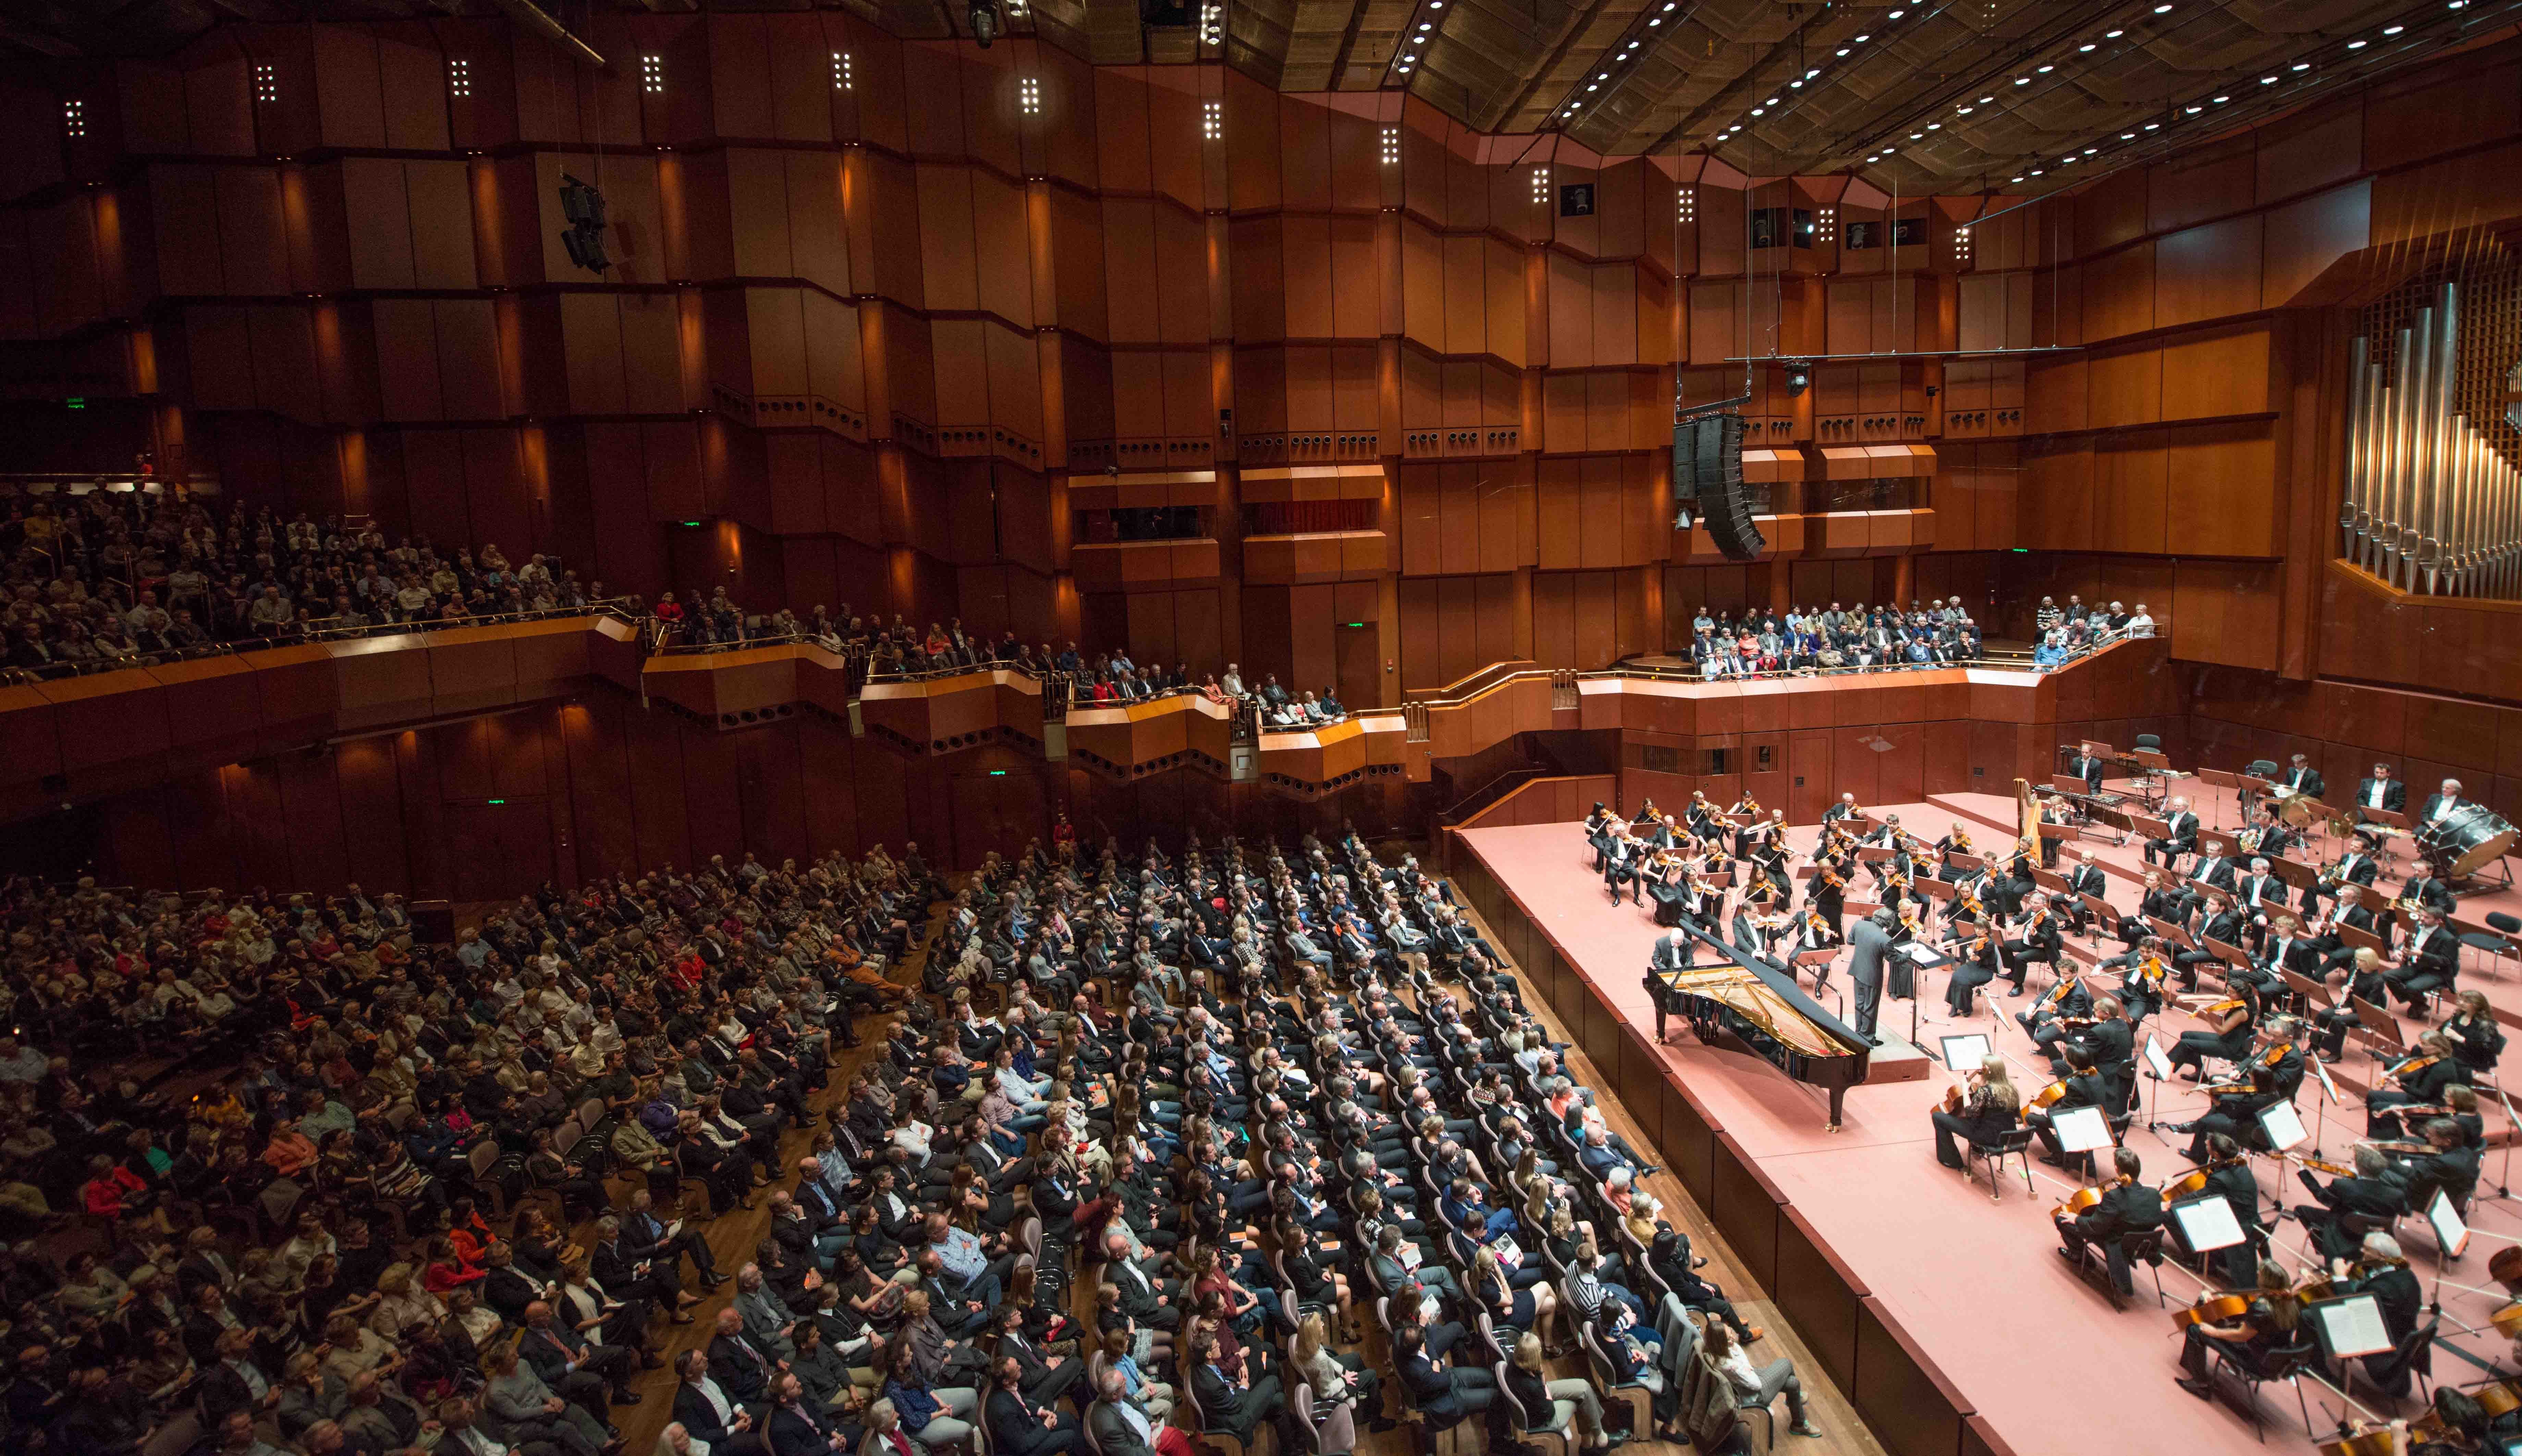 Im großen Saal der Alten Oper finden 2400 Gäste Platz. Die Mahagonivertäfelung sorgt für eine herausragende Akustik., Credit: © Oper Frankfurt/Tibor Pluto